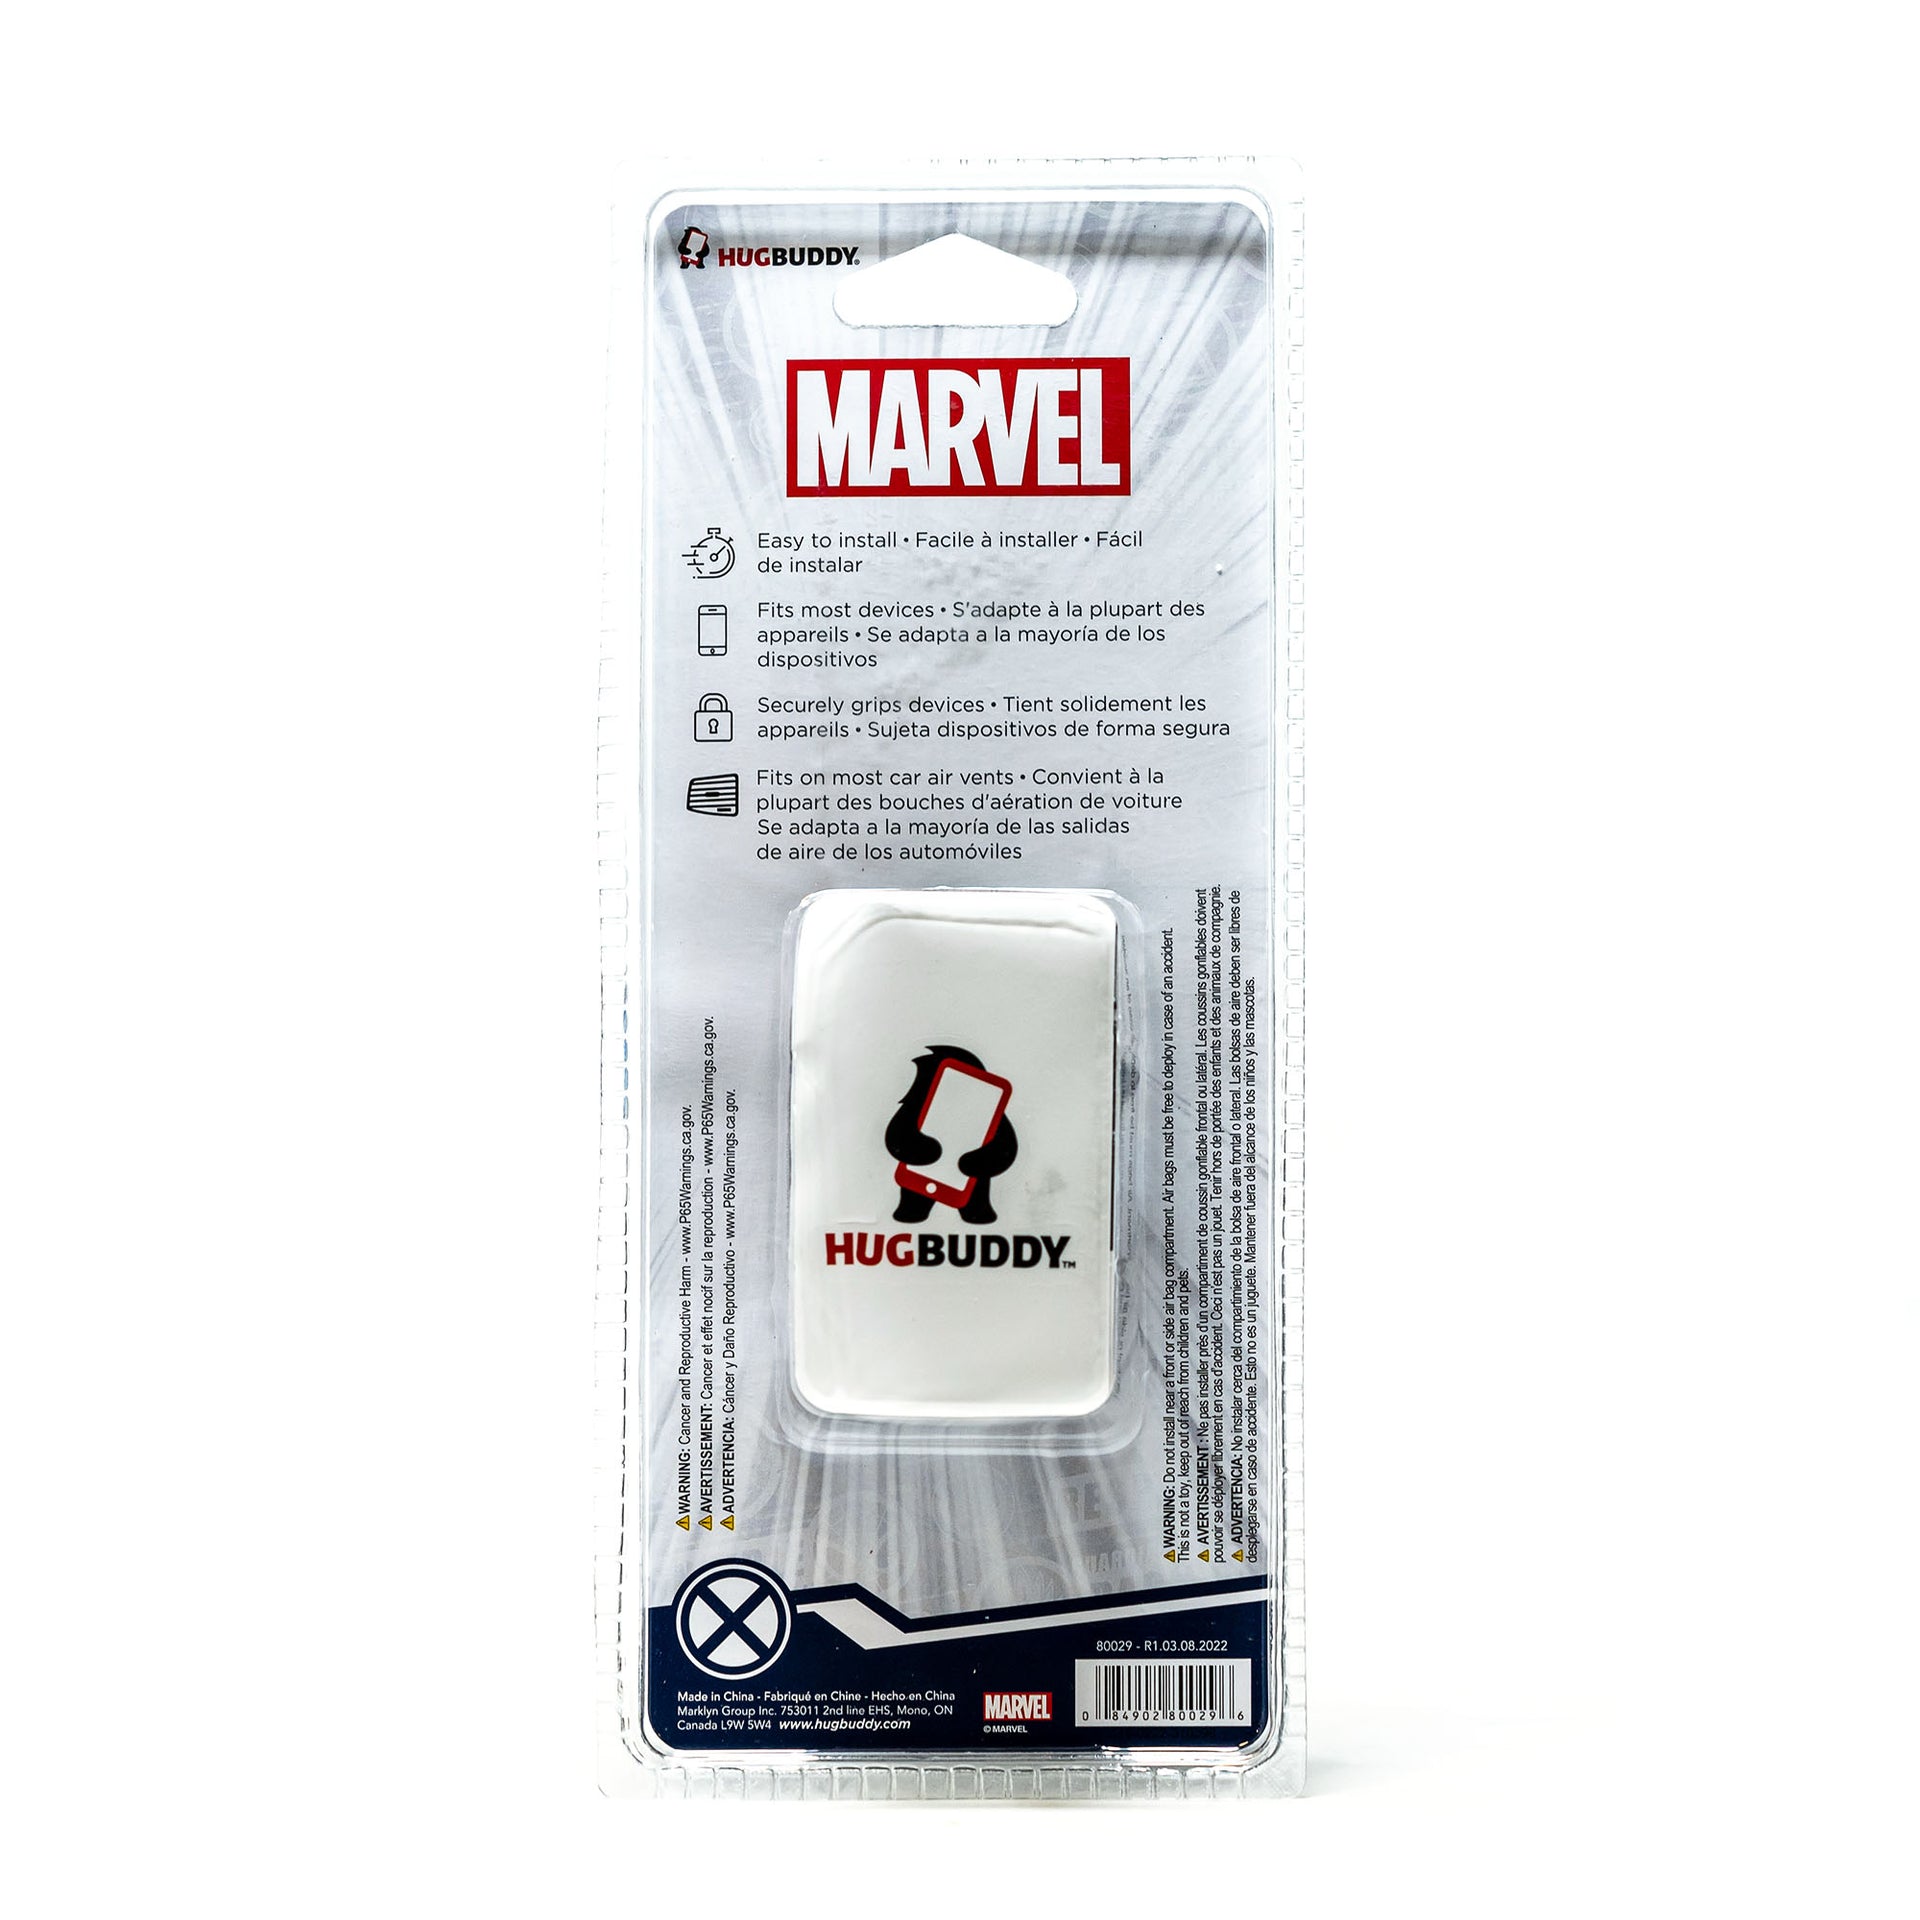 Image of Marvel Wolverine Hug Buddy packaging